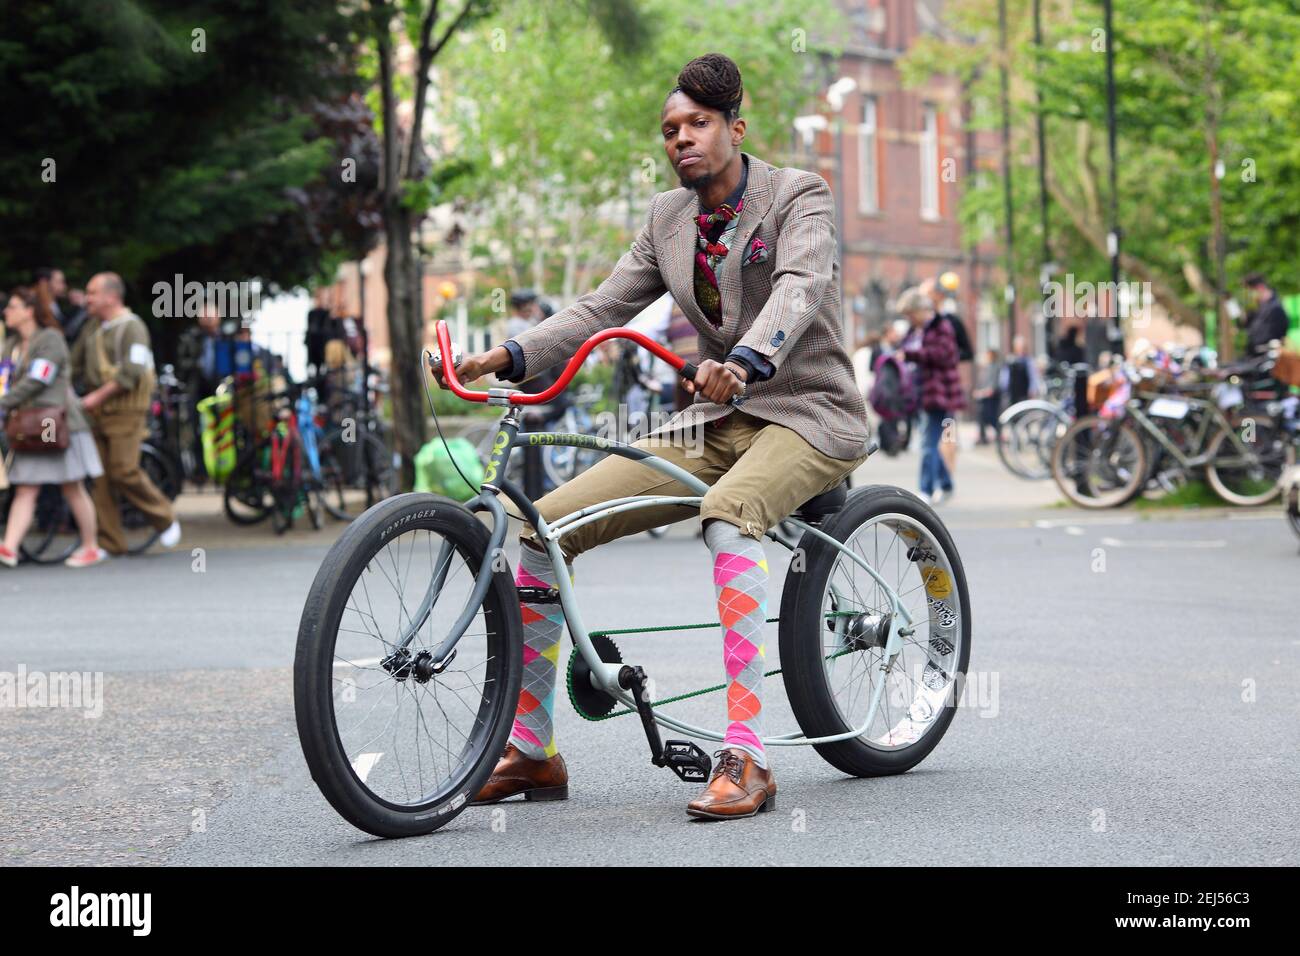 Uomo britannico afro-caraibico vestito in tweed seduto sulla bicicletta di abitudine del lowrider a Londra, Regno Unito Foto Stock